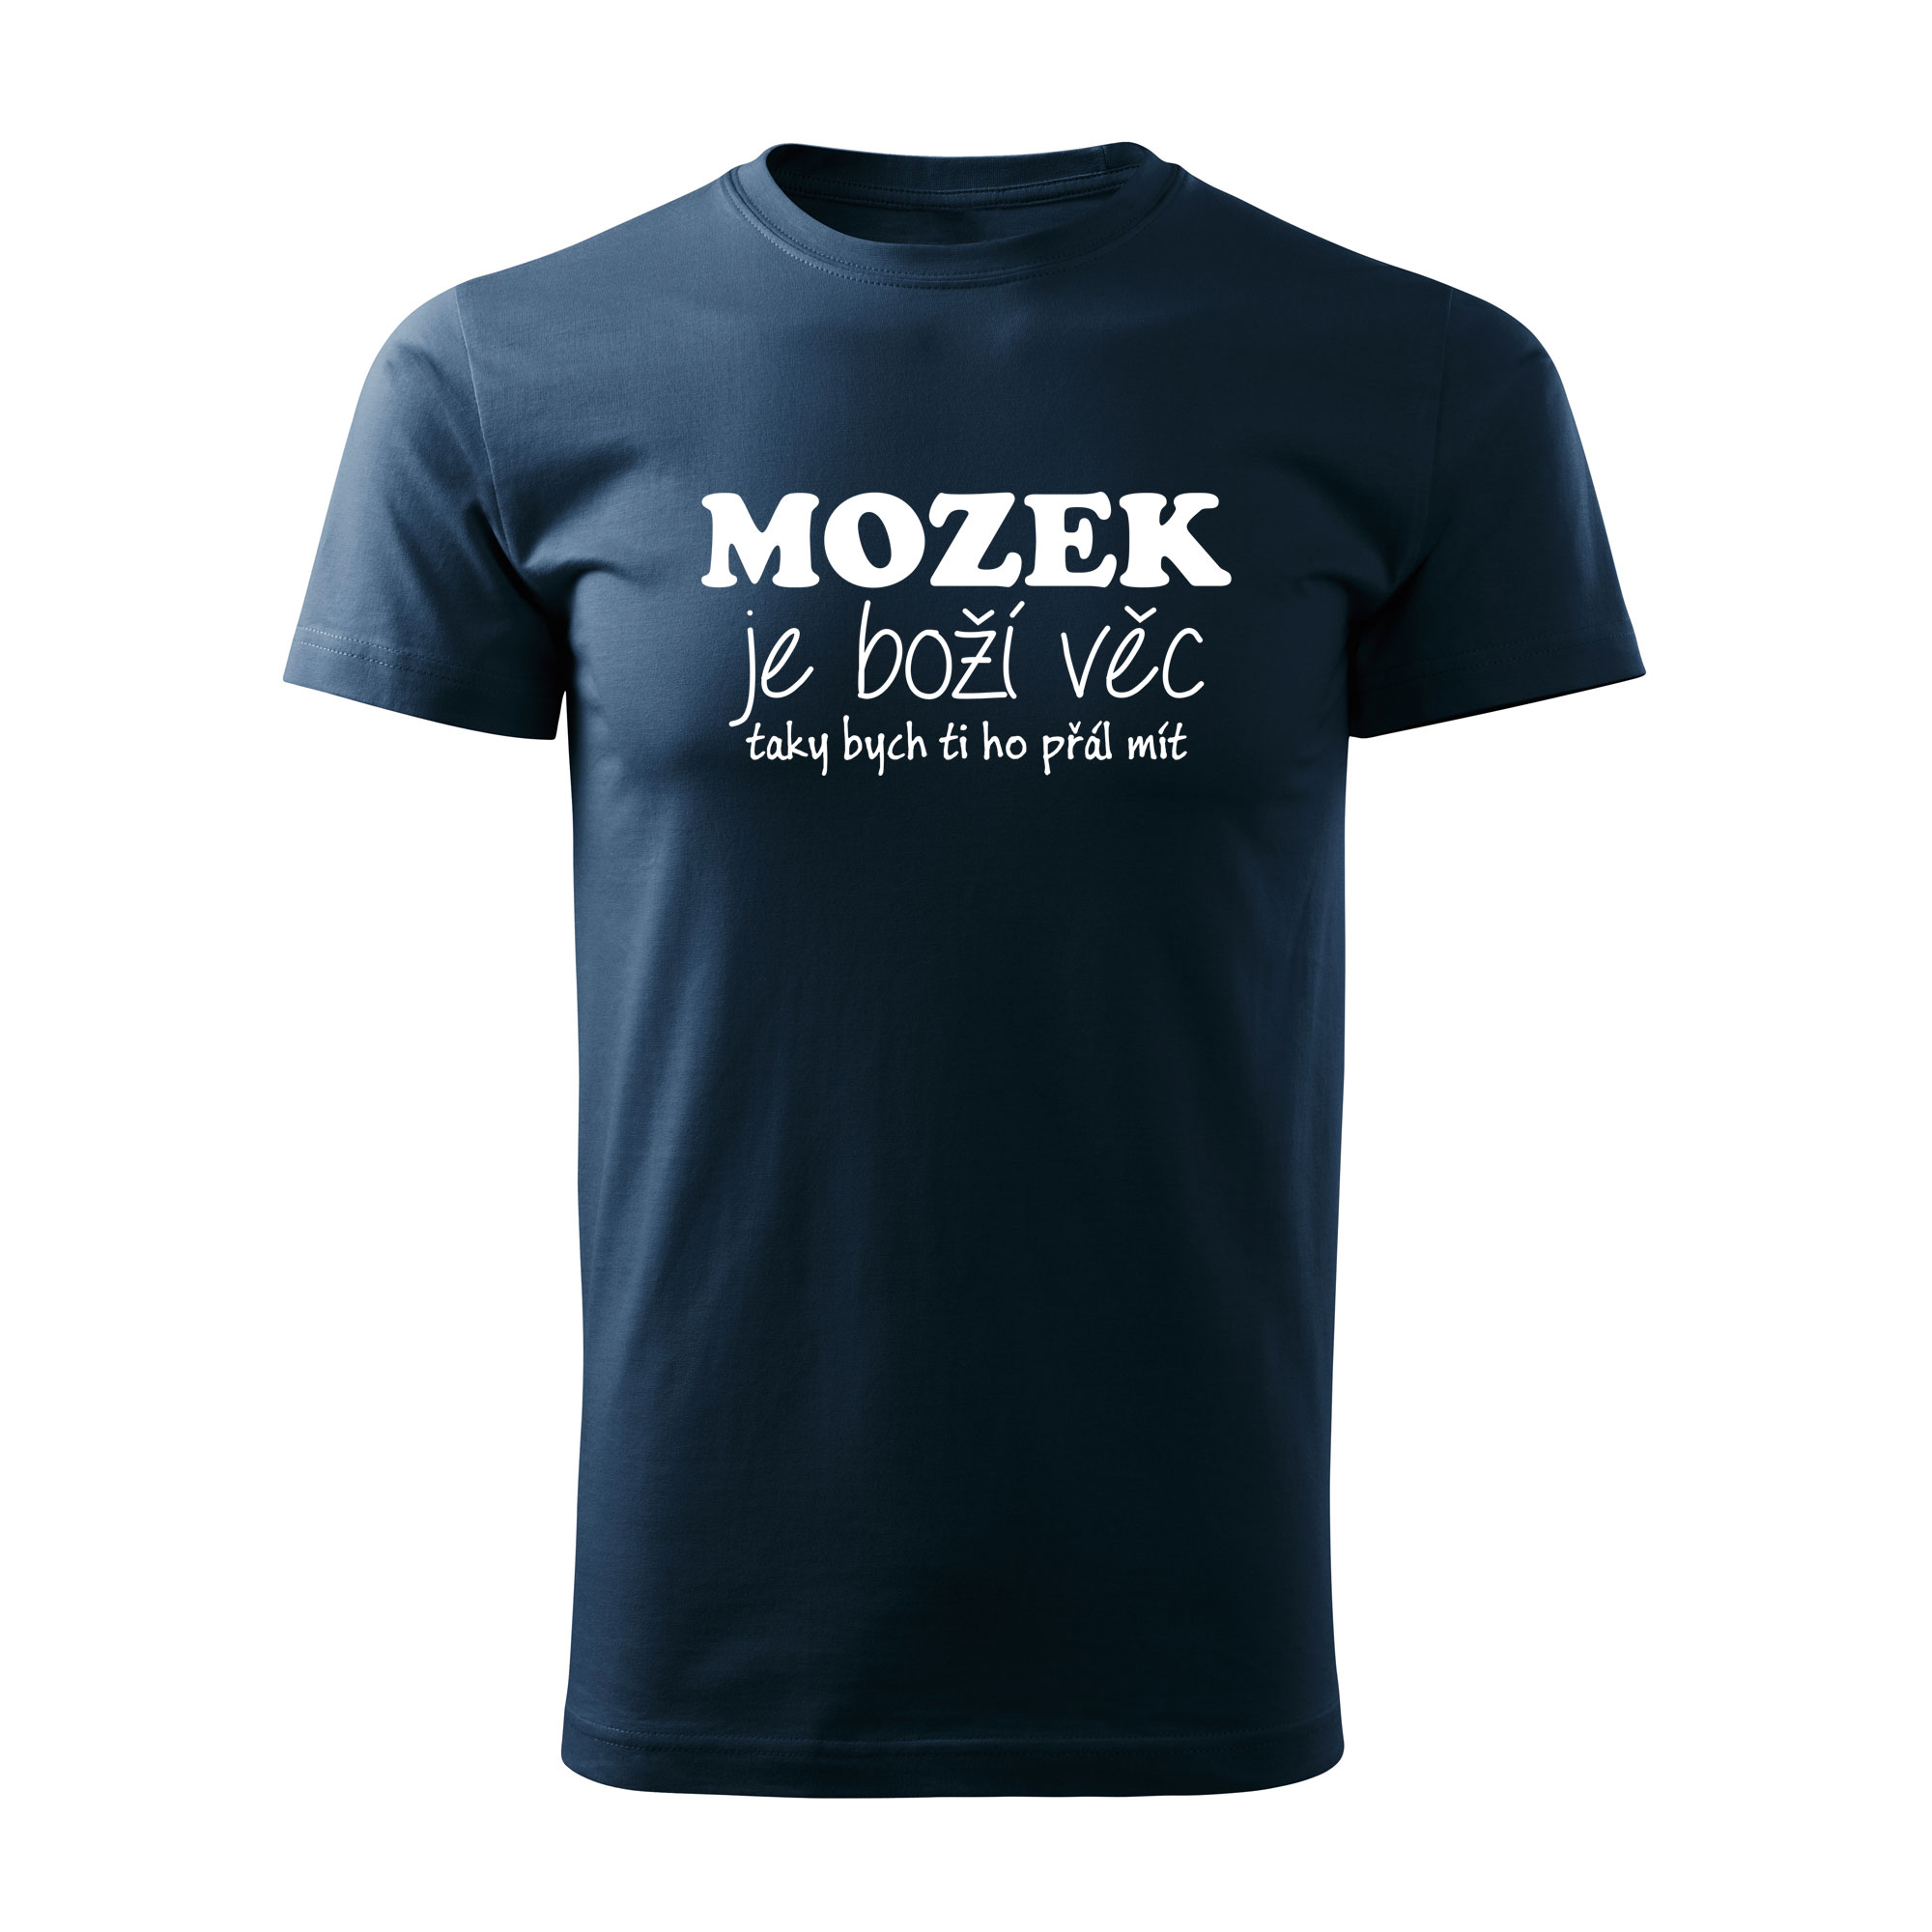 MOZEK - pánské triko navy modrá